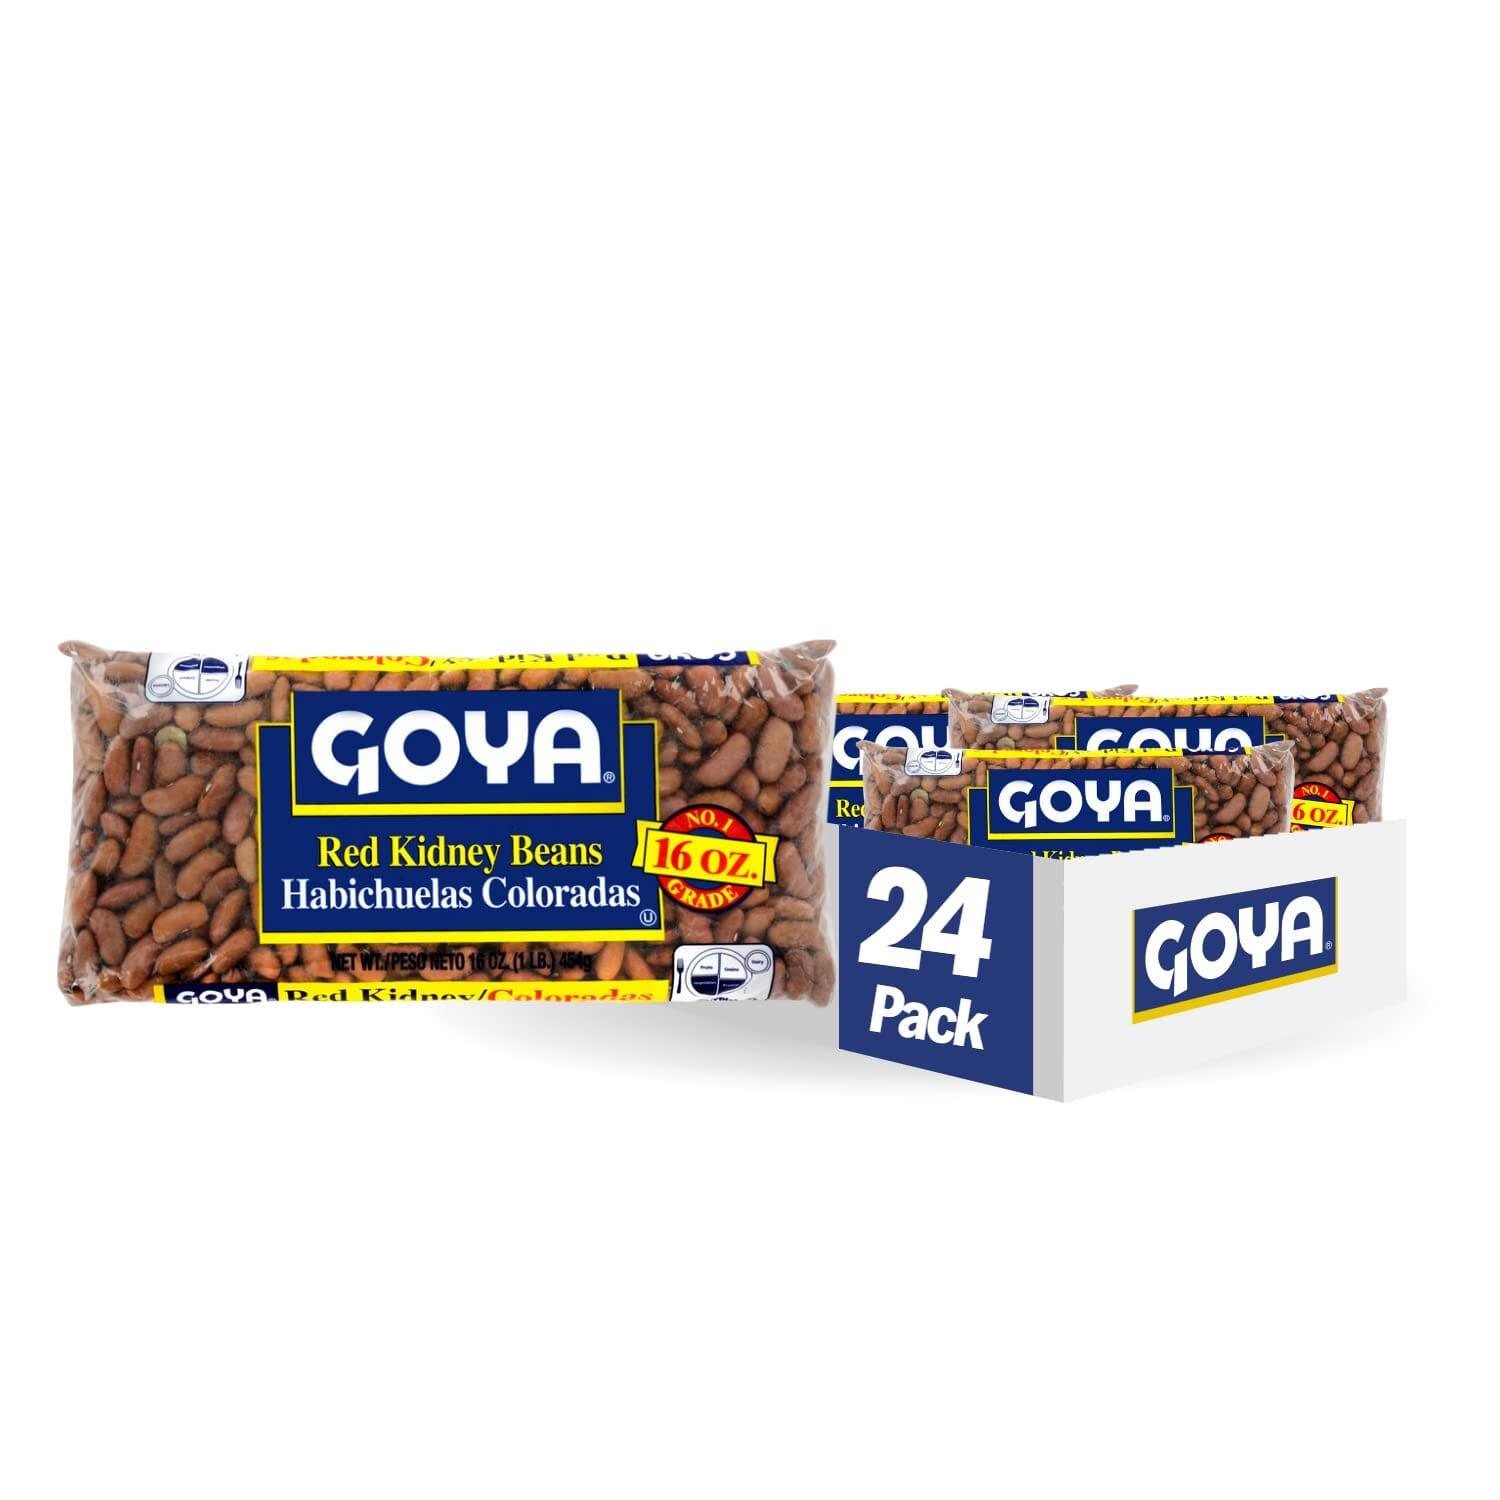 Goya Red Kidney Beans (Habichelas Coloradas) Goya Original 16 Oz-24Count 